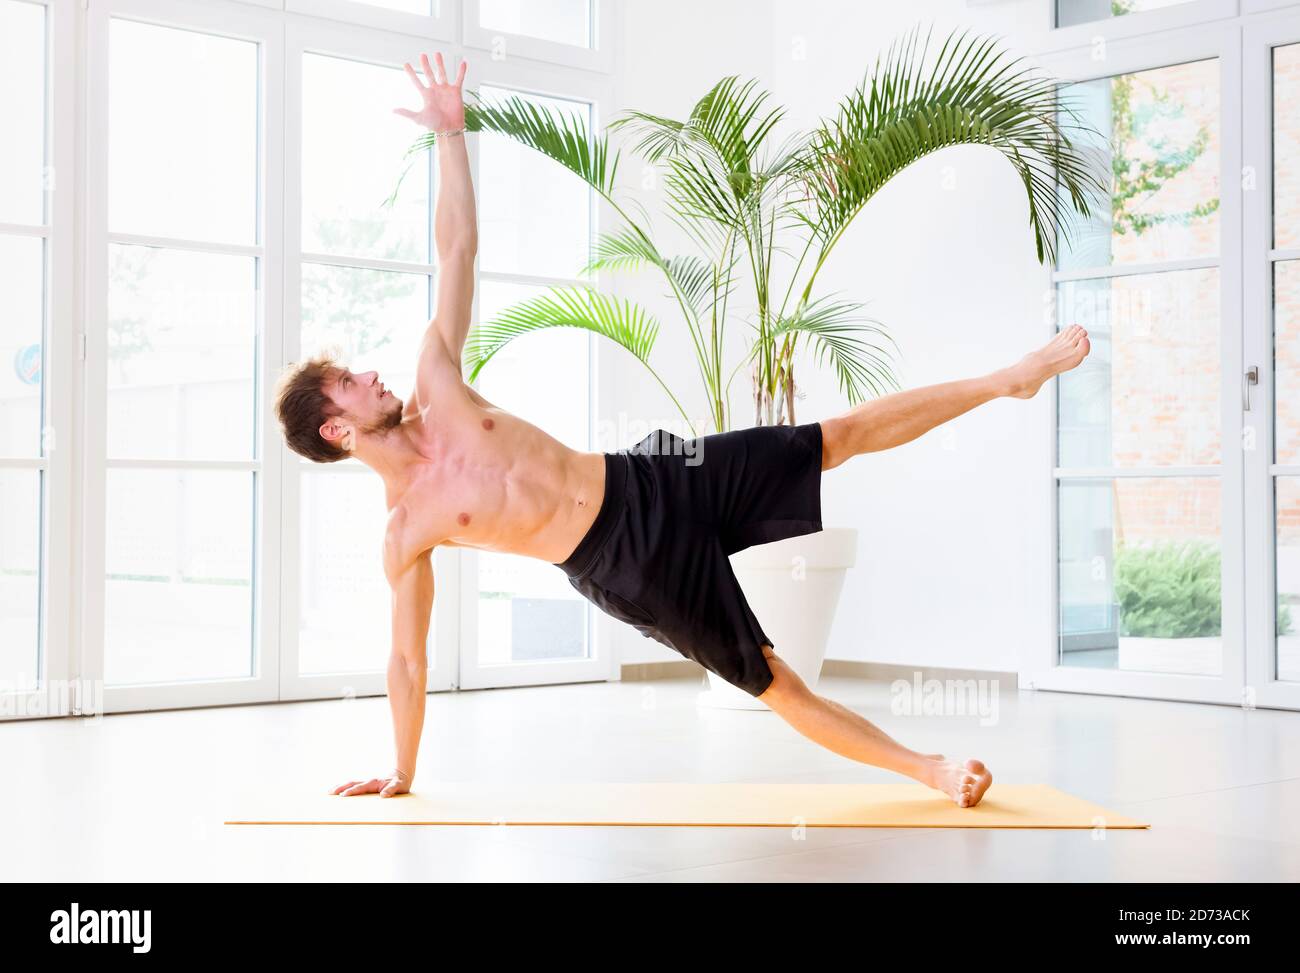 El hombre haciendo un ejercicio de yoga de la tabla lateral para fortalecer sus músculos centrales, brazo y muñeca en vista lateral en un gimnasio de alta clave en un concepto de salud y fitness Foto de stock